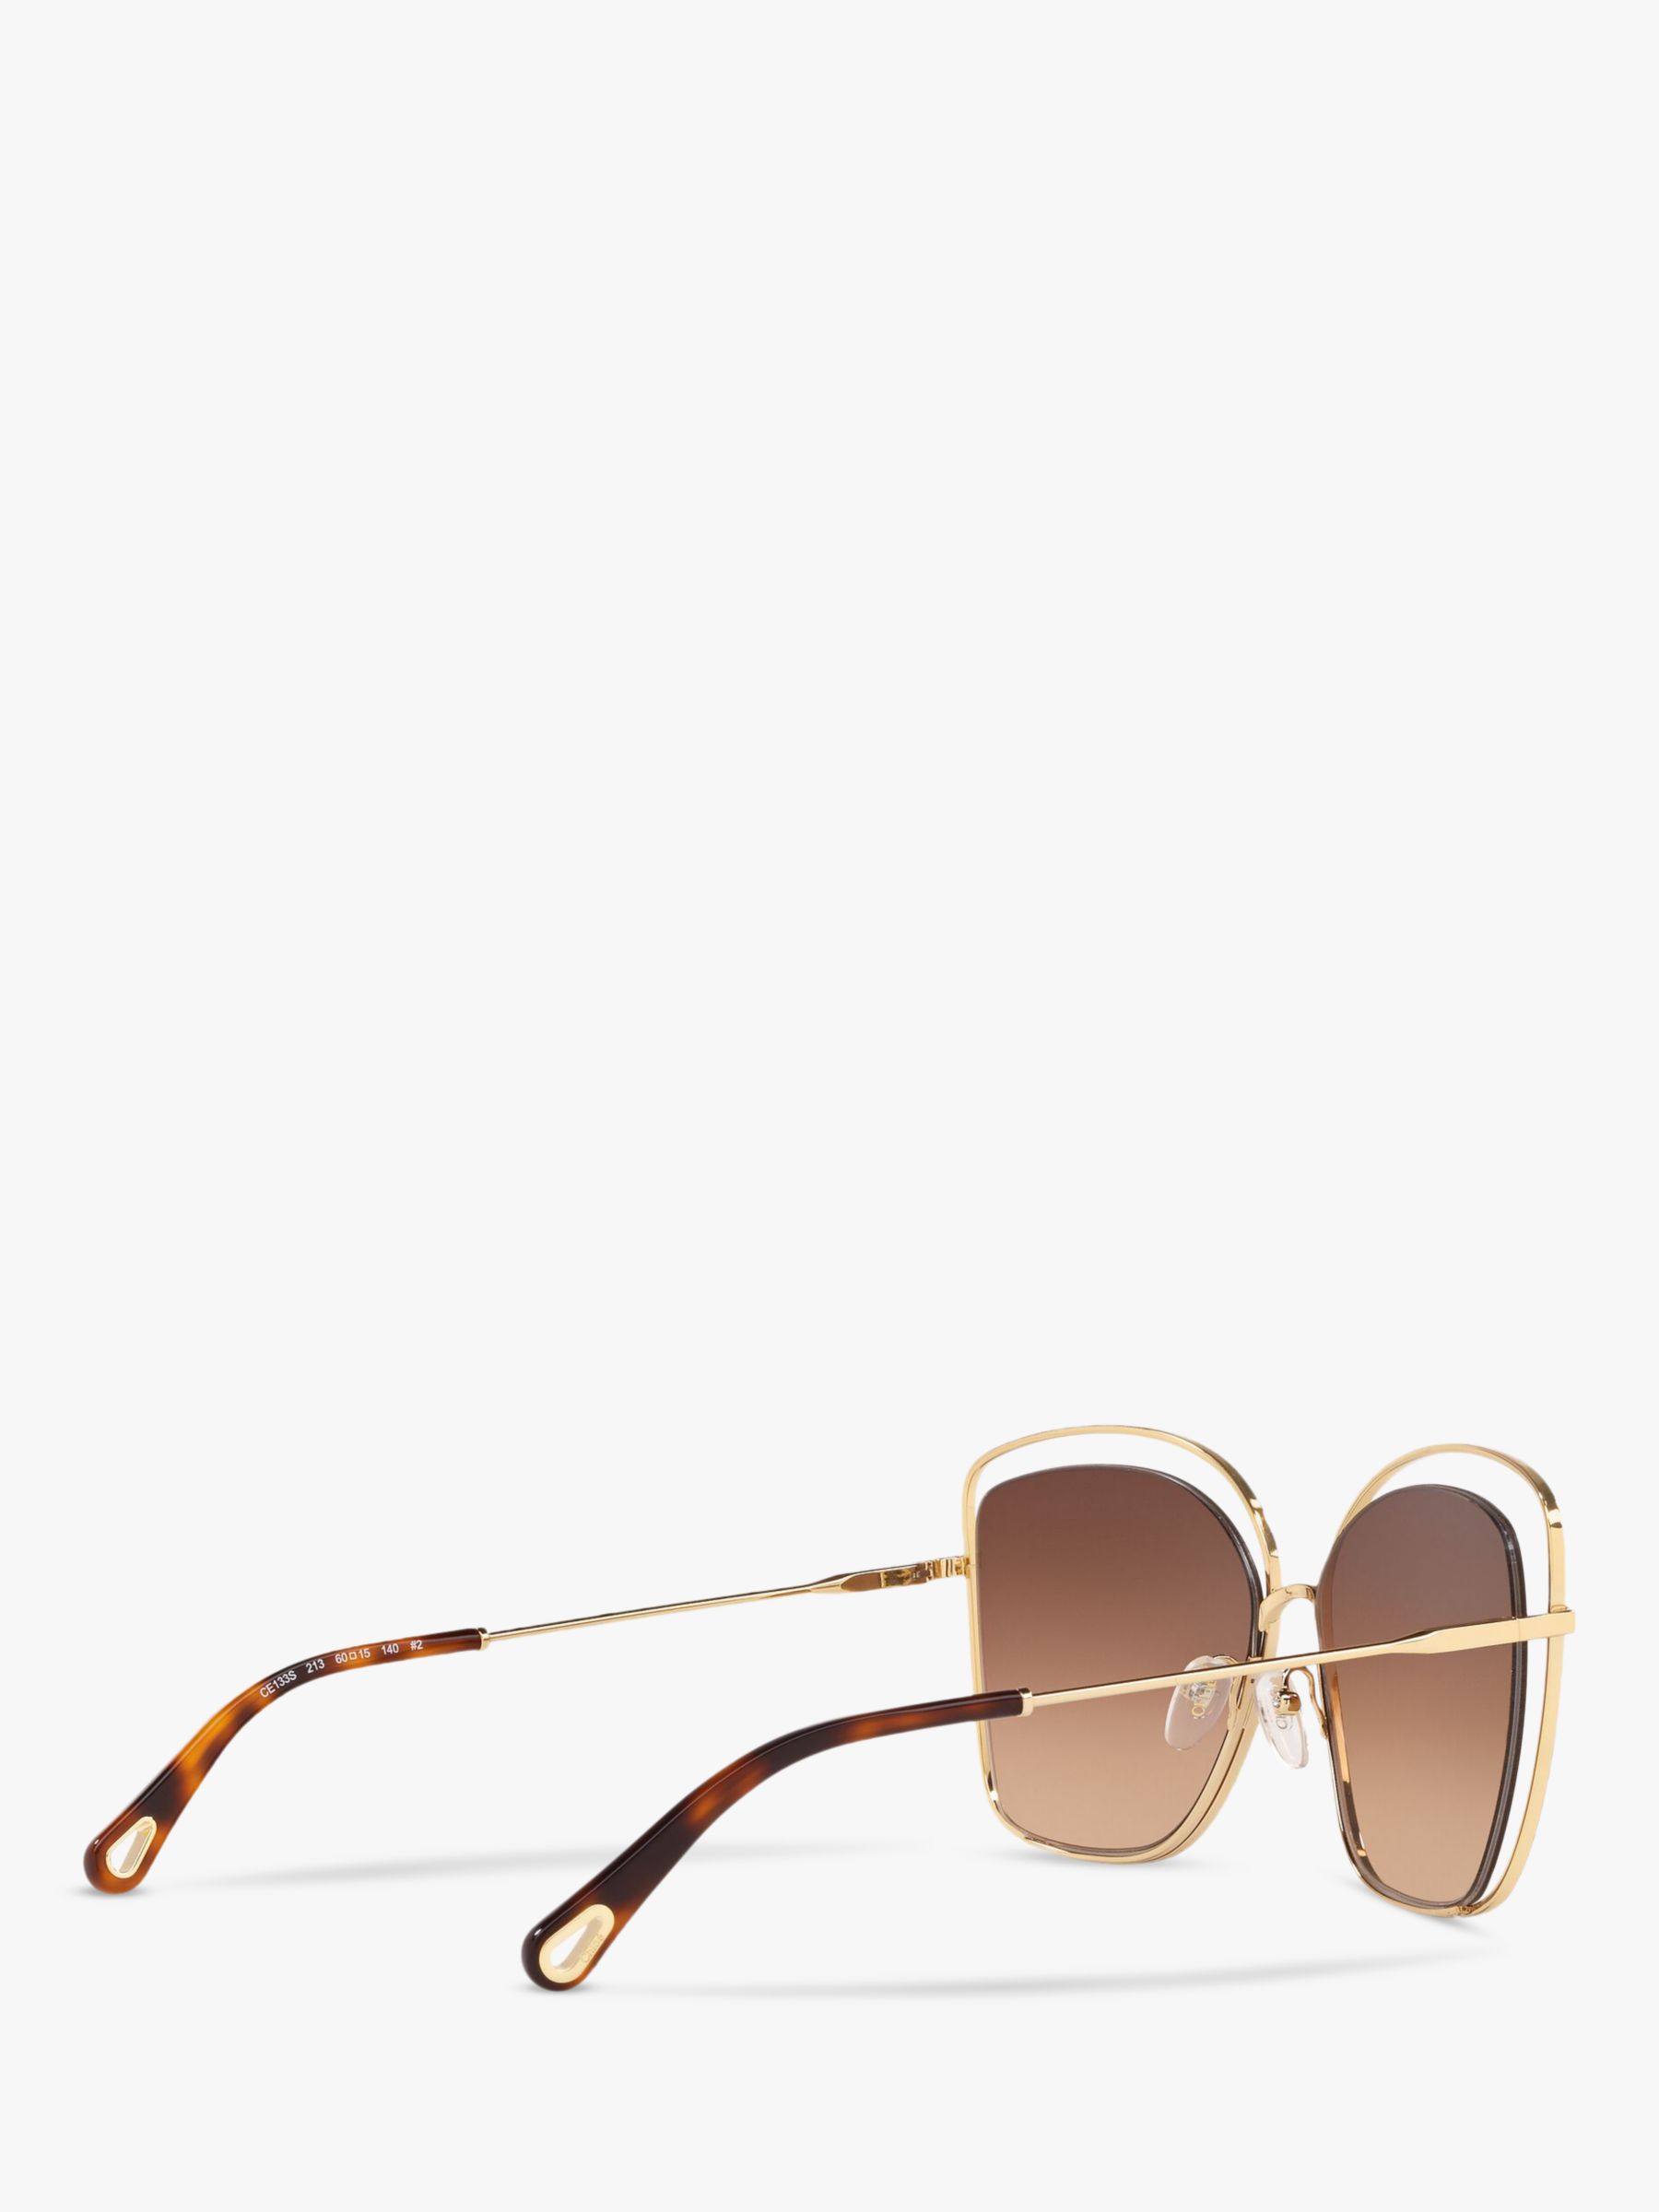 Buy Chloé CE133S Women's Double Rim Square Sunglasses Online at johnlewis.com